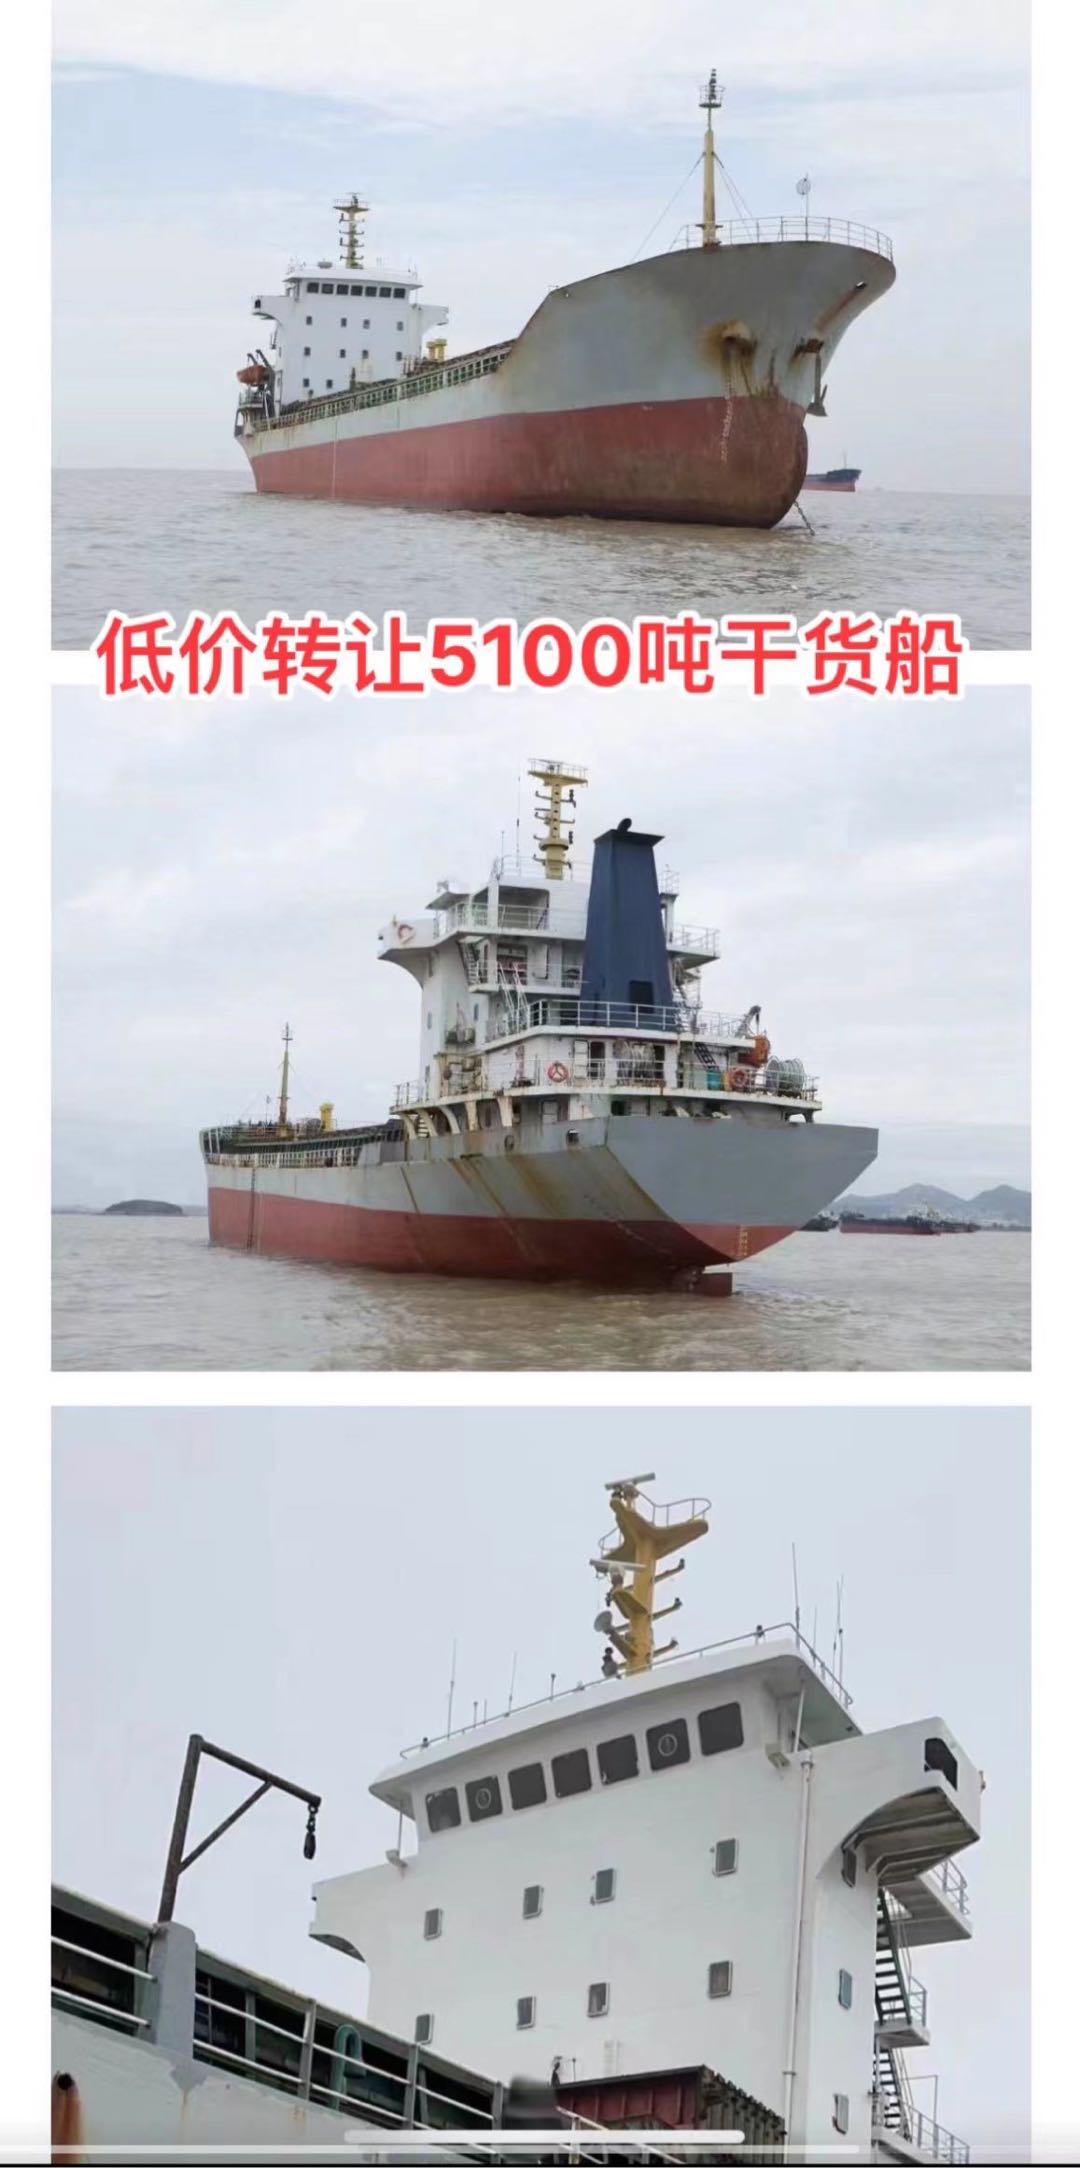 低价出卖04年5100吨干货船 祸建 宁德市-2.jpg